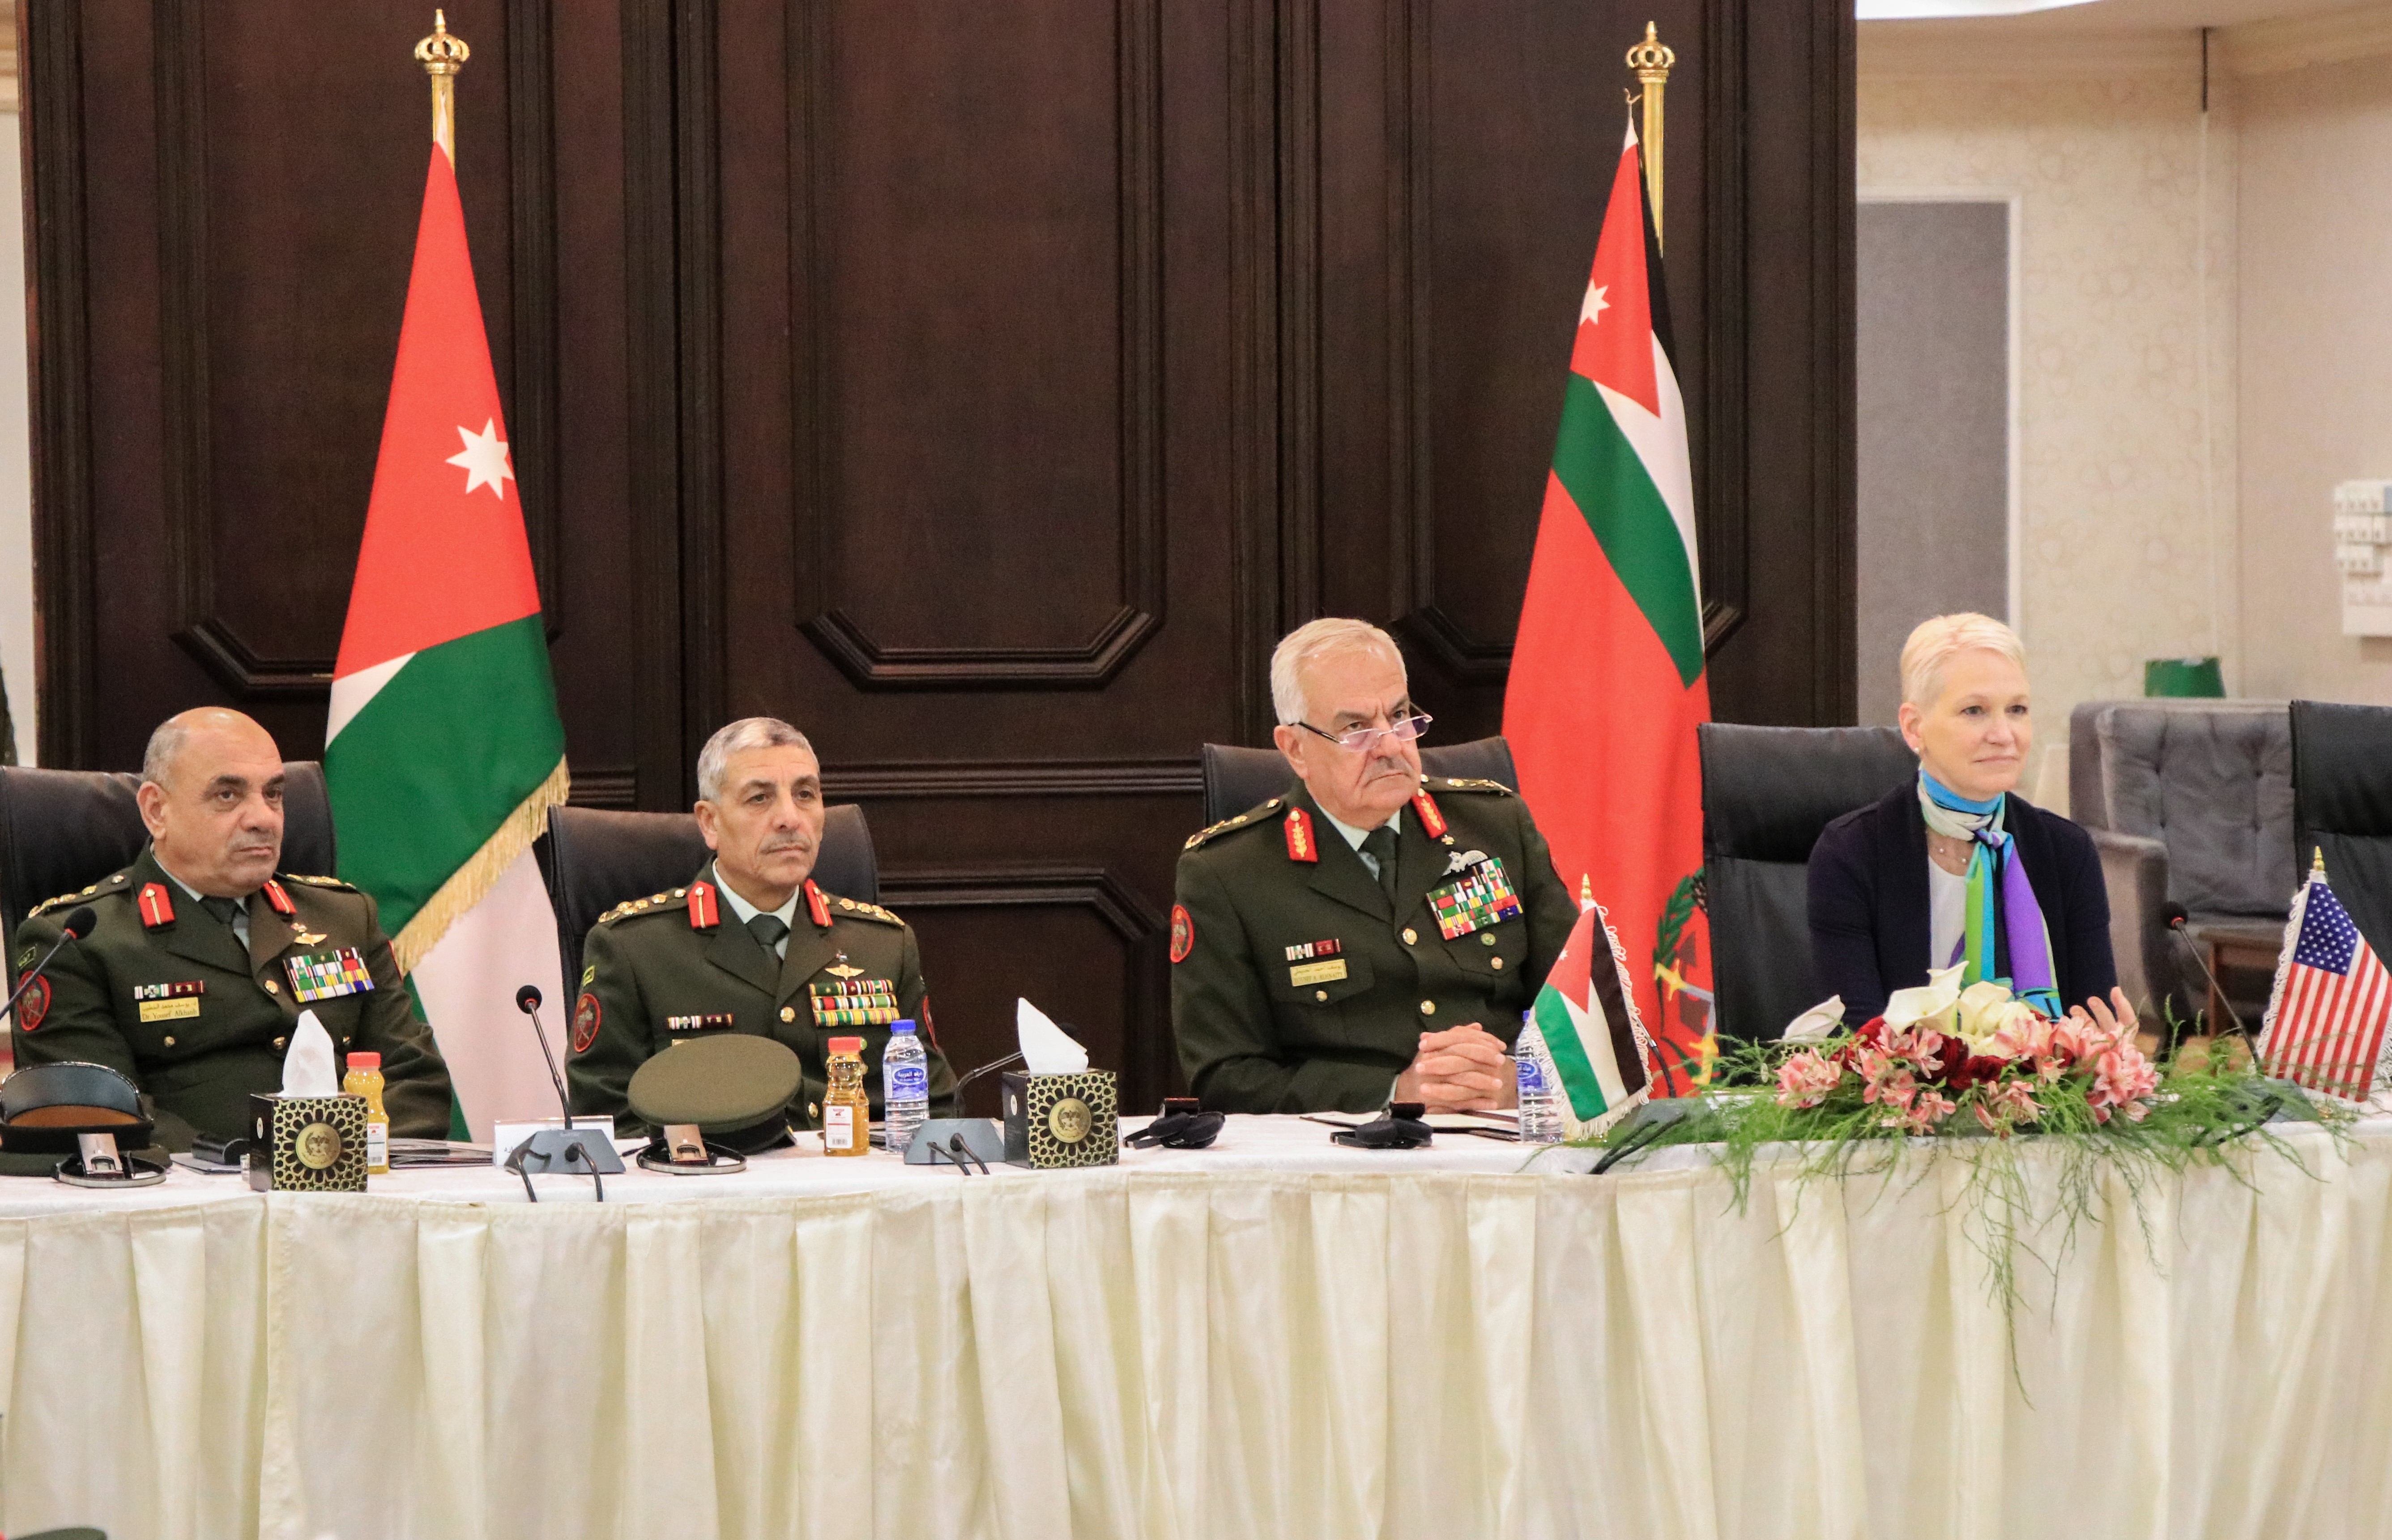 اللواء الركن الحنيطي يرعى اختتام اجتماعات اللجنة العسكرية الأردنية - الأمريكية